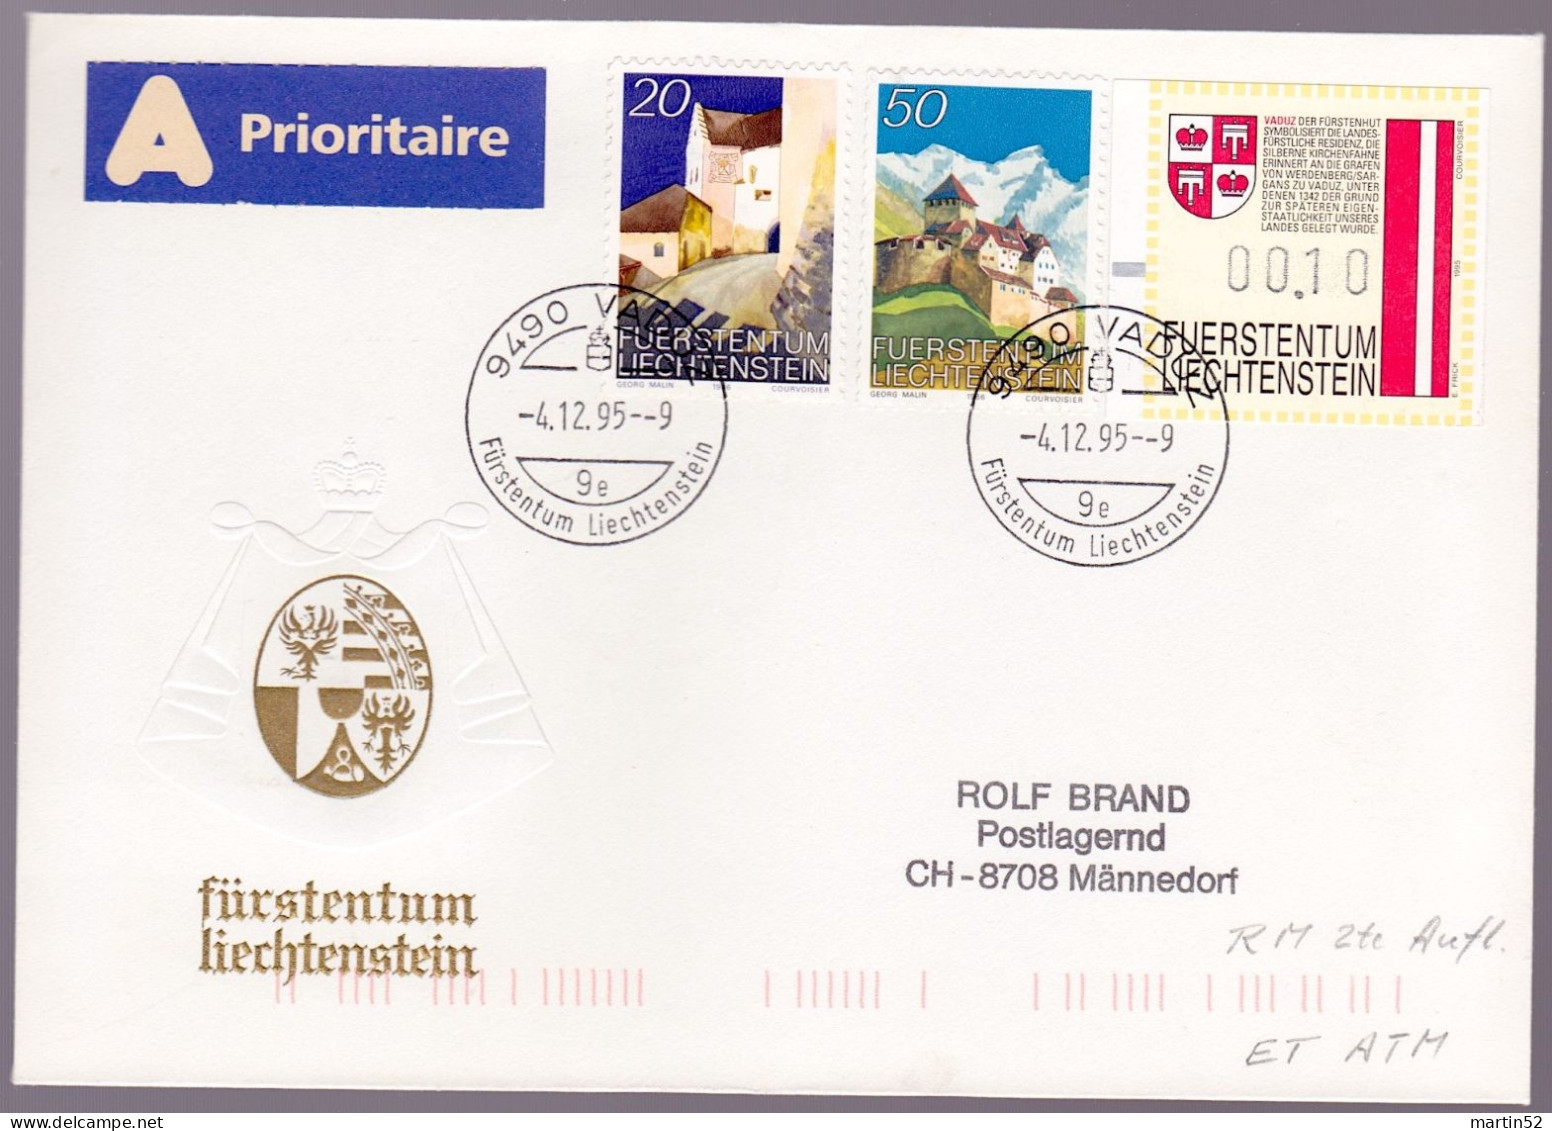 Liechtenstein 1995: Rollenmarken Rouleaux Coil-stamps Zu 836-837R Mi 896-897 Yv 837-838 + ATM Mit O VADUZ 4.12.96 - Abarten